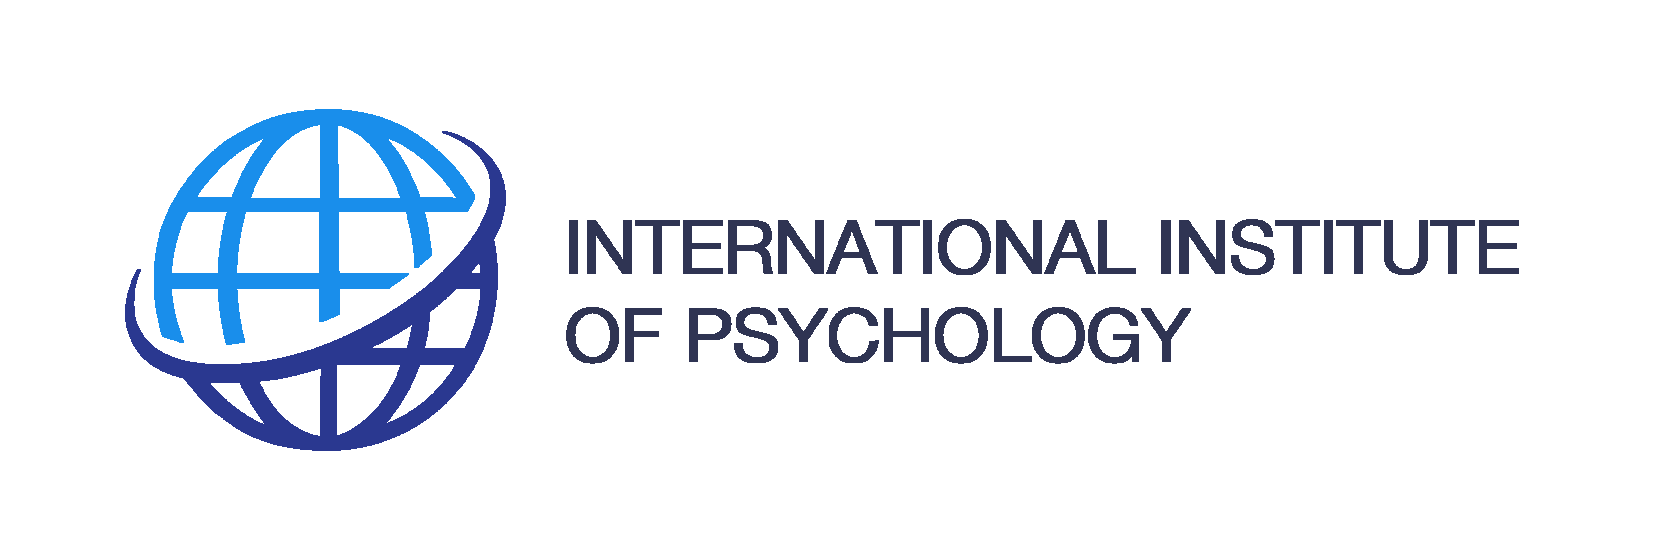 международный институт психологии